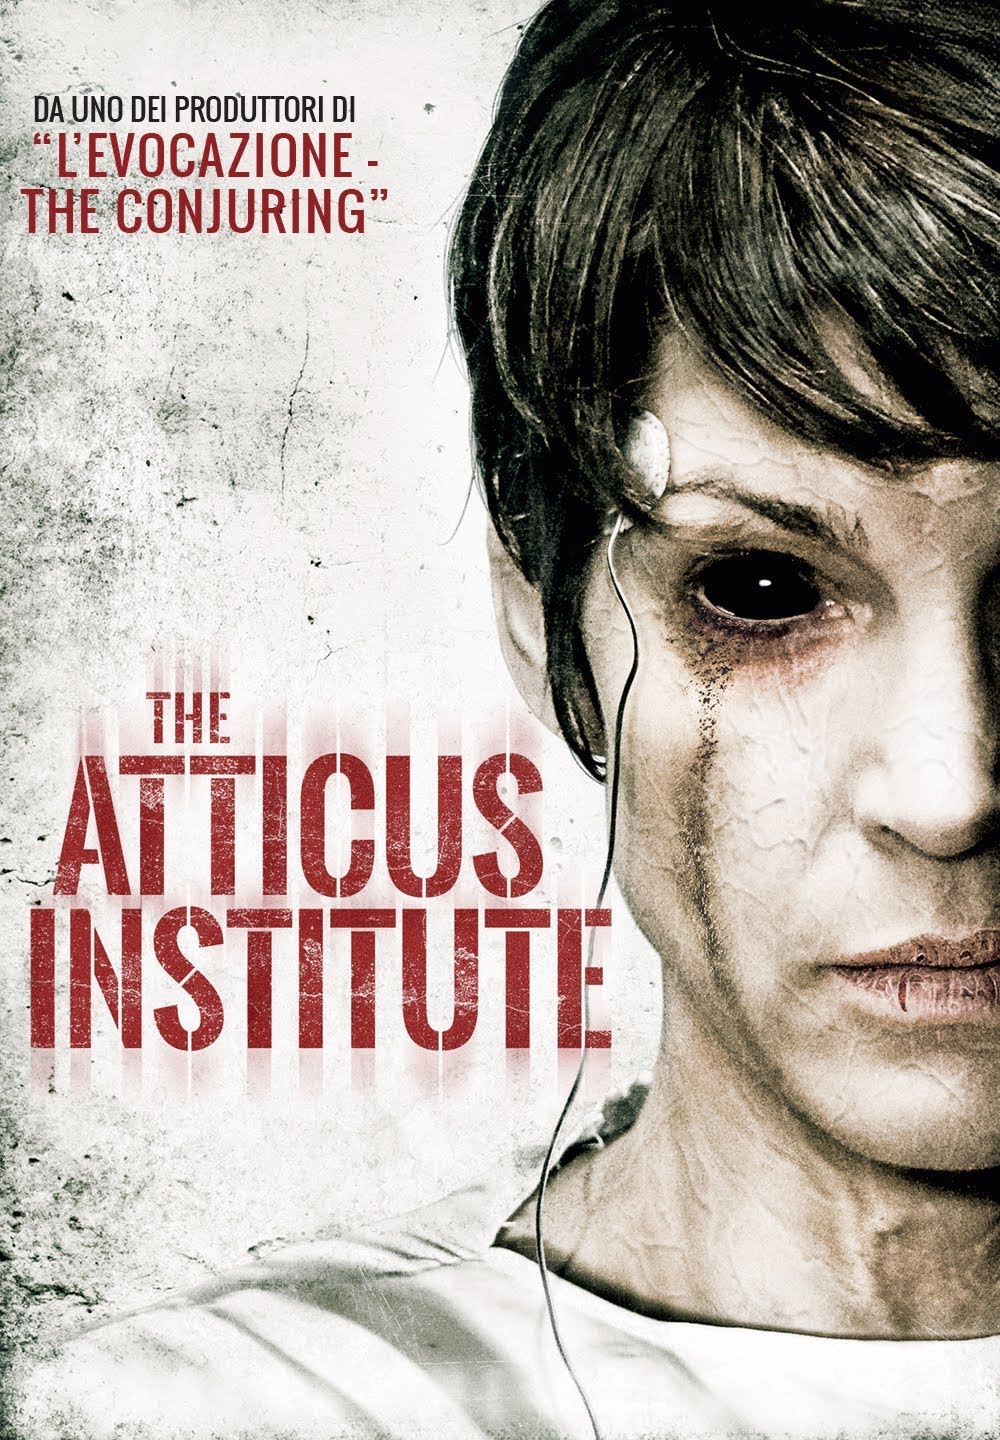 The Atticus Institute [HD] (2015)